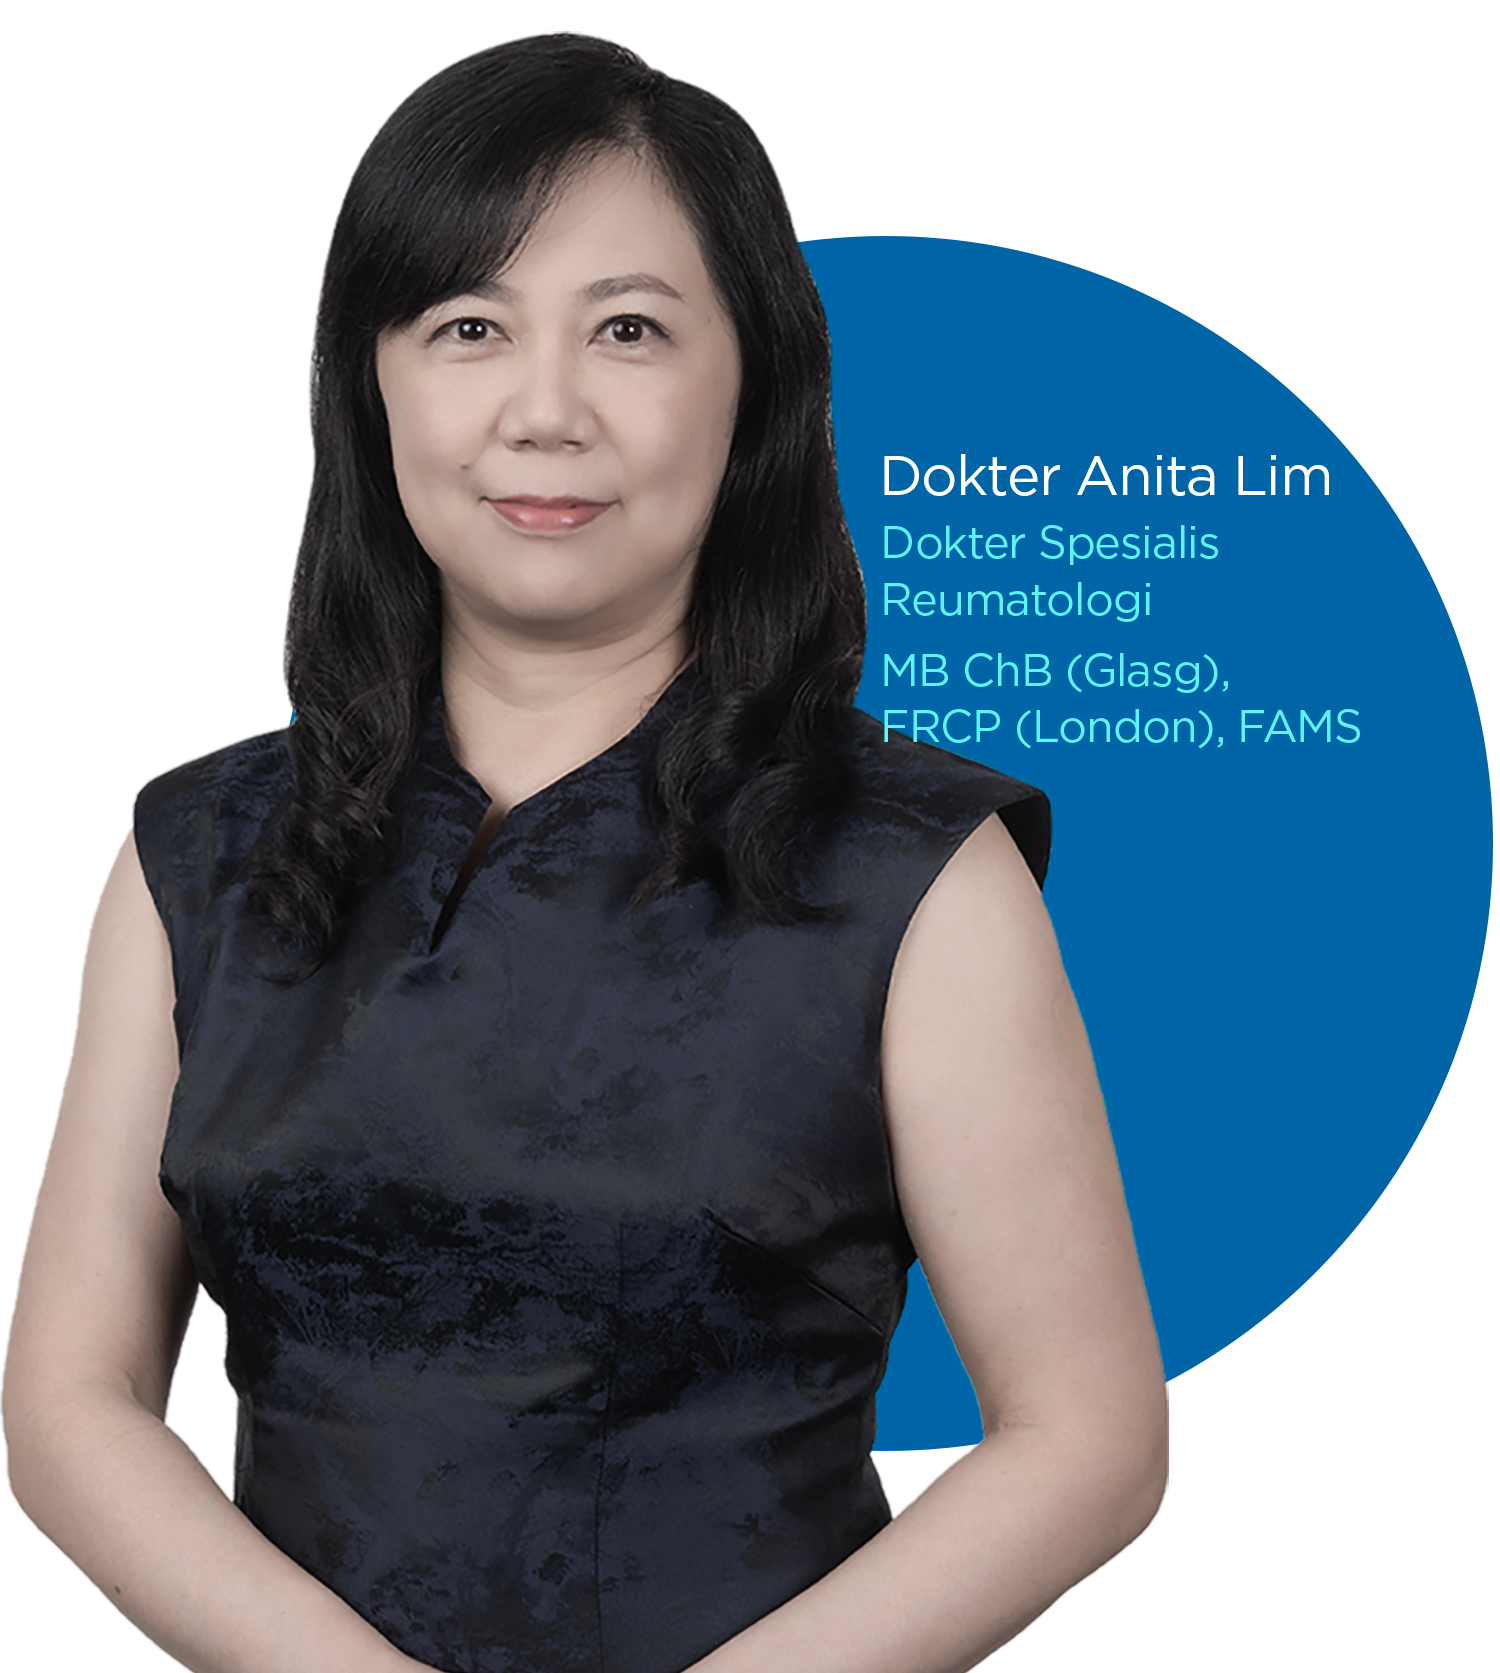 Dr Anita Lim